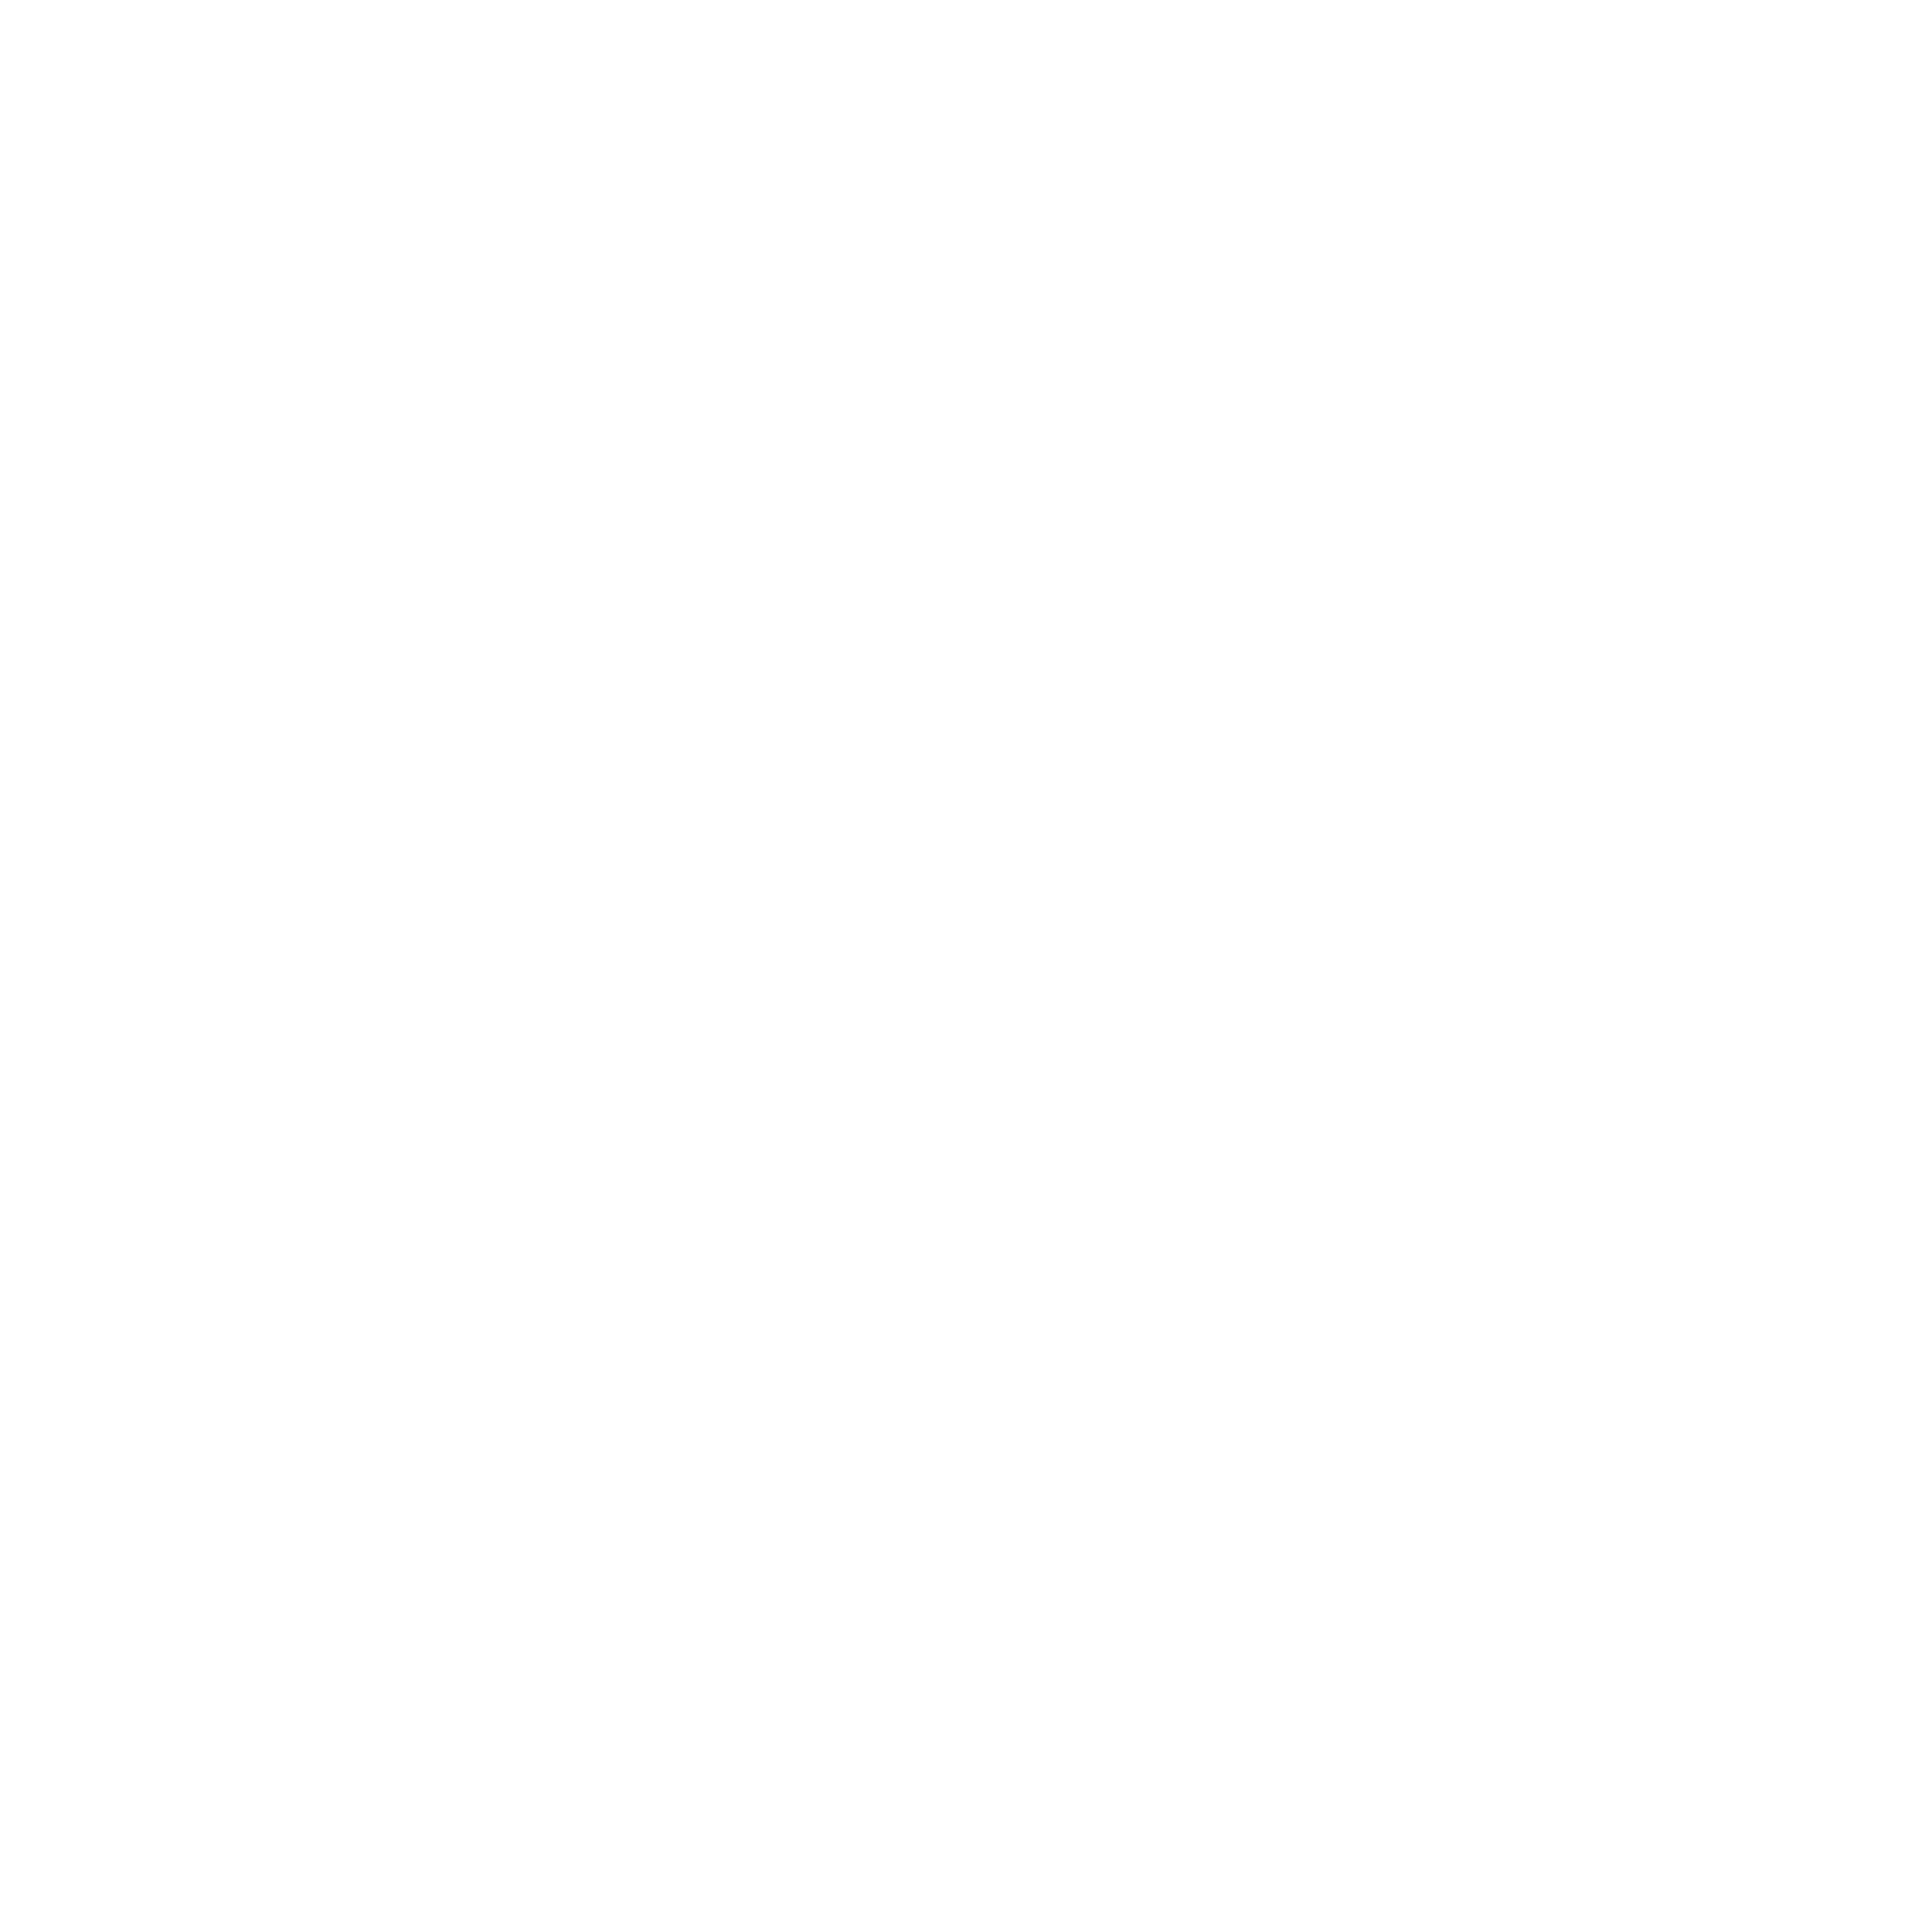 Instagram Car Logo - Instagram 4096. Community Christian Church